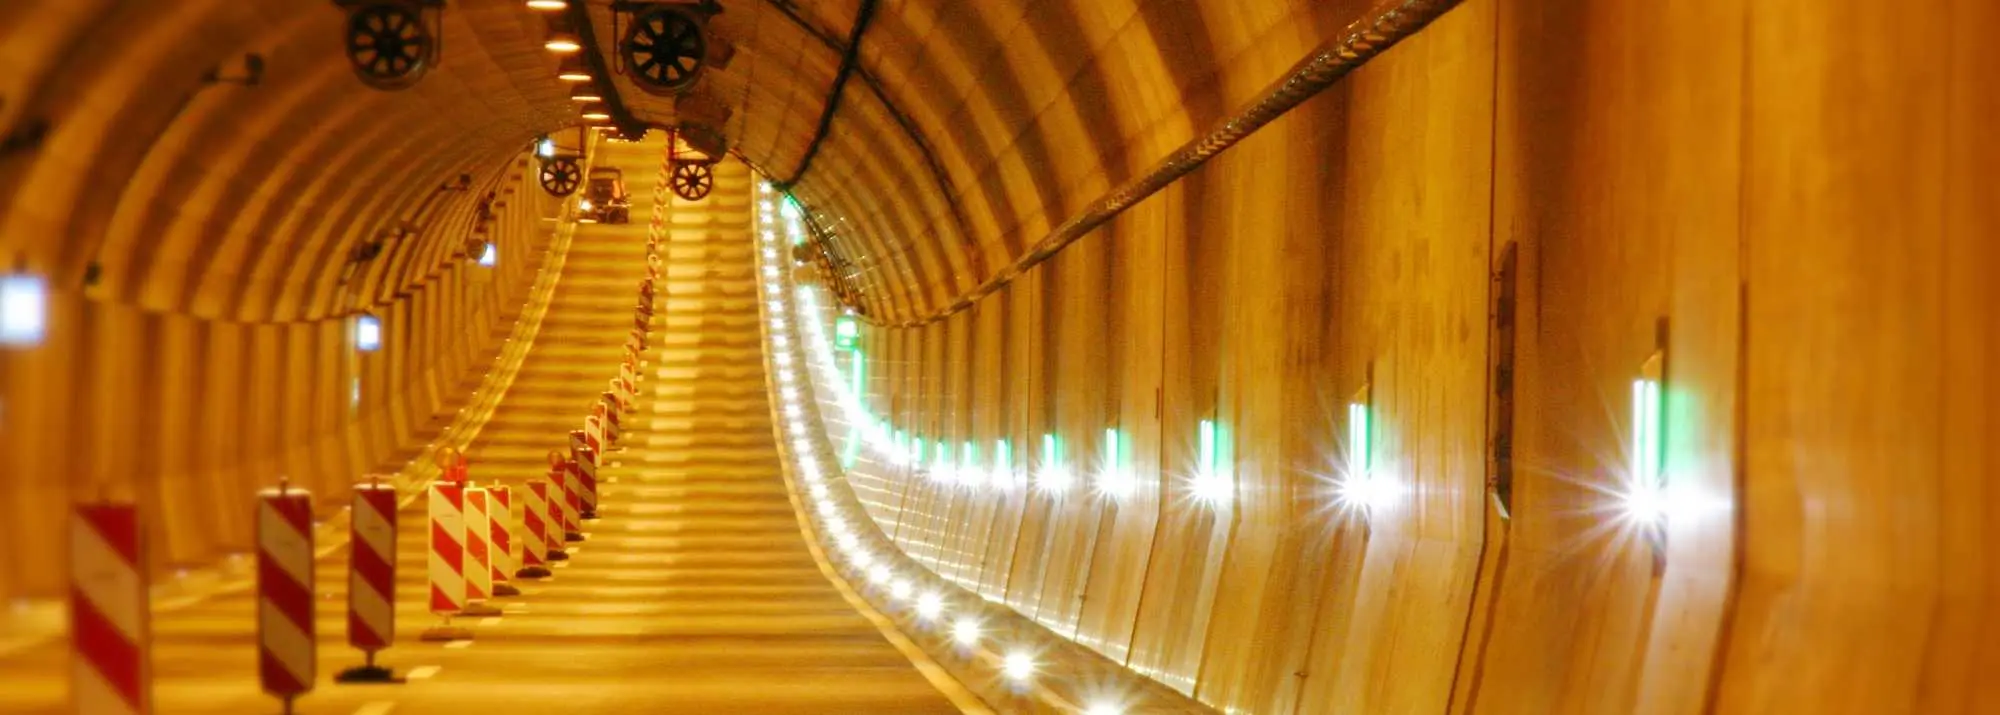 Tunnel Sicherheitsbaken